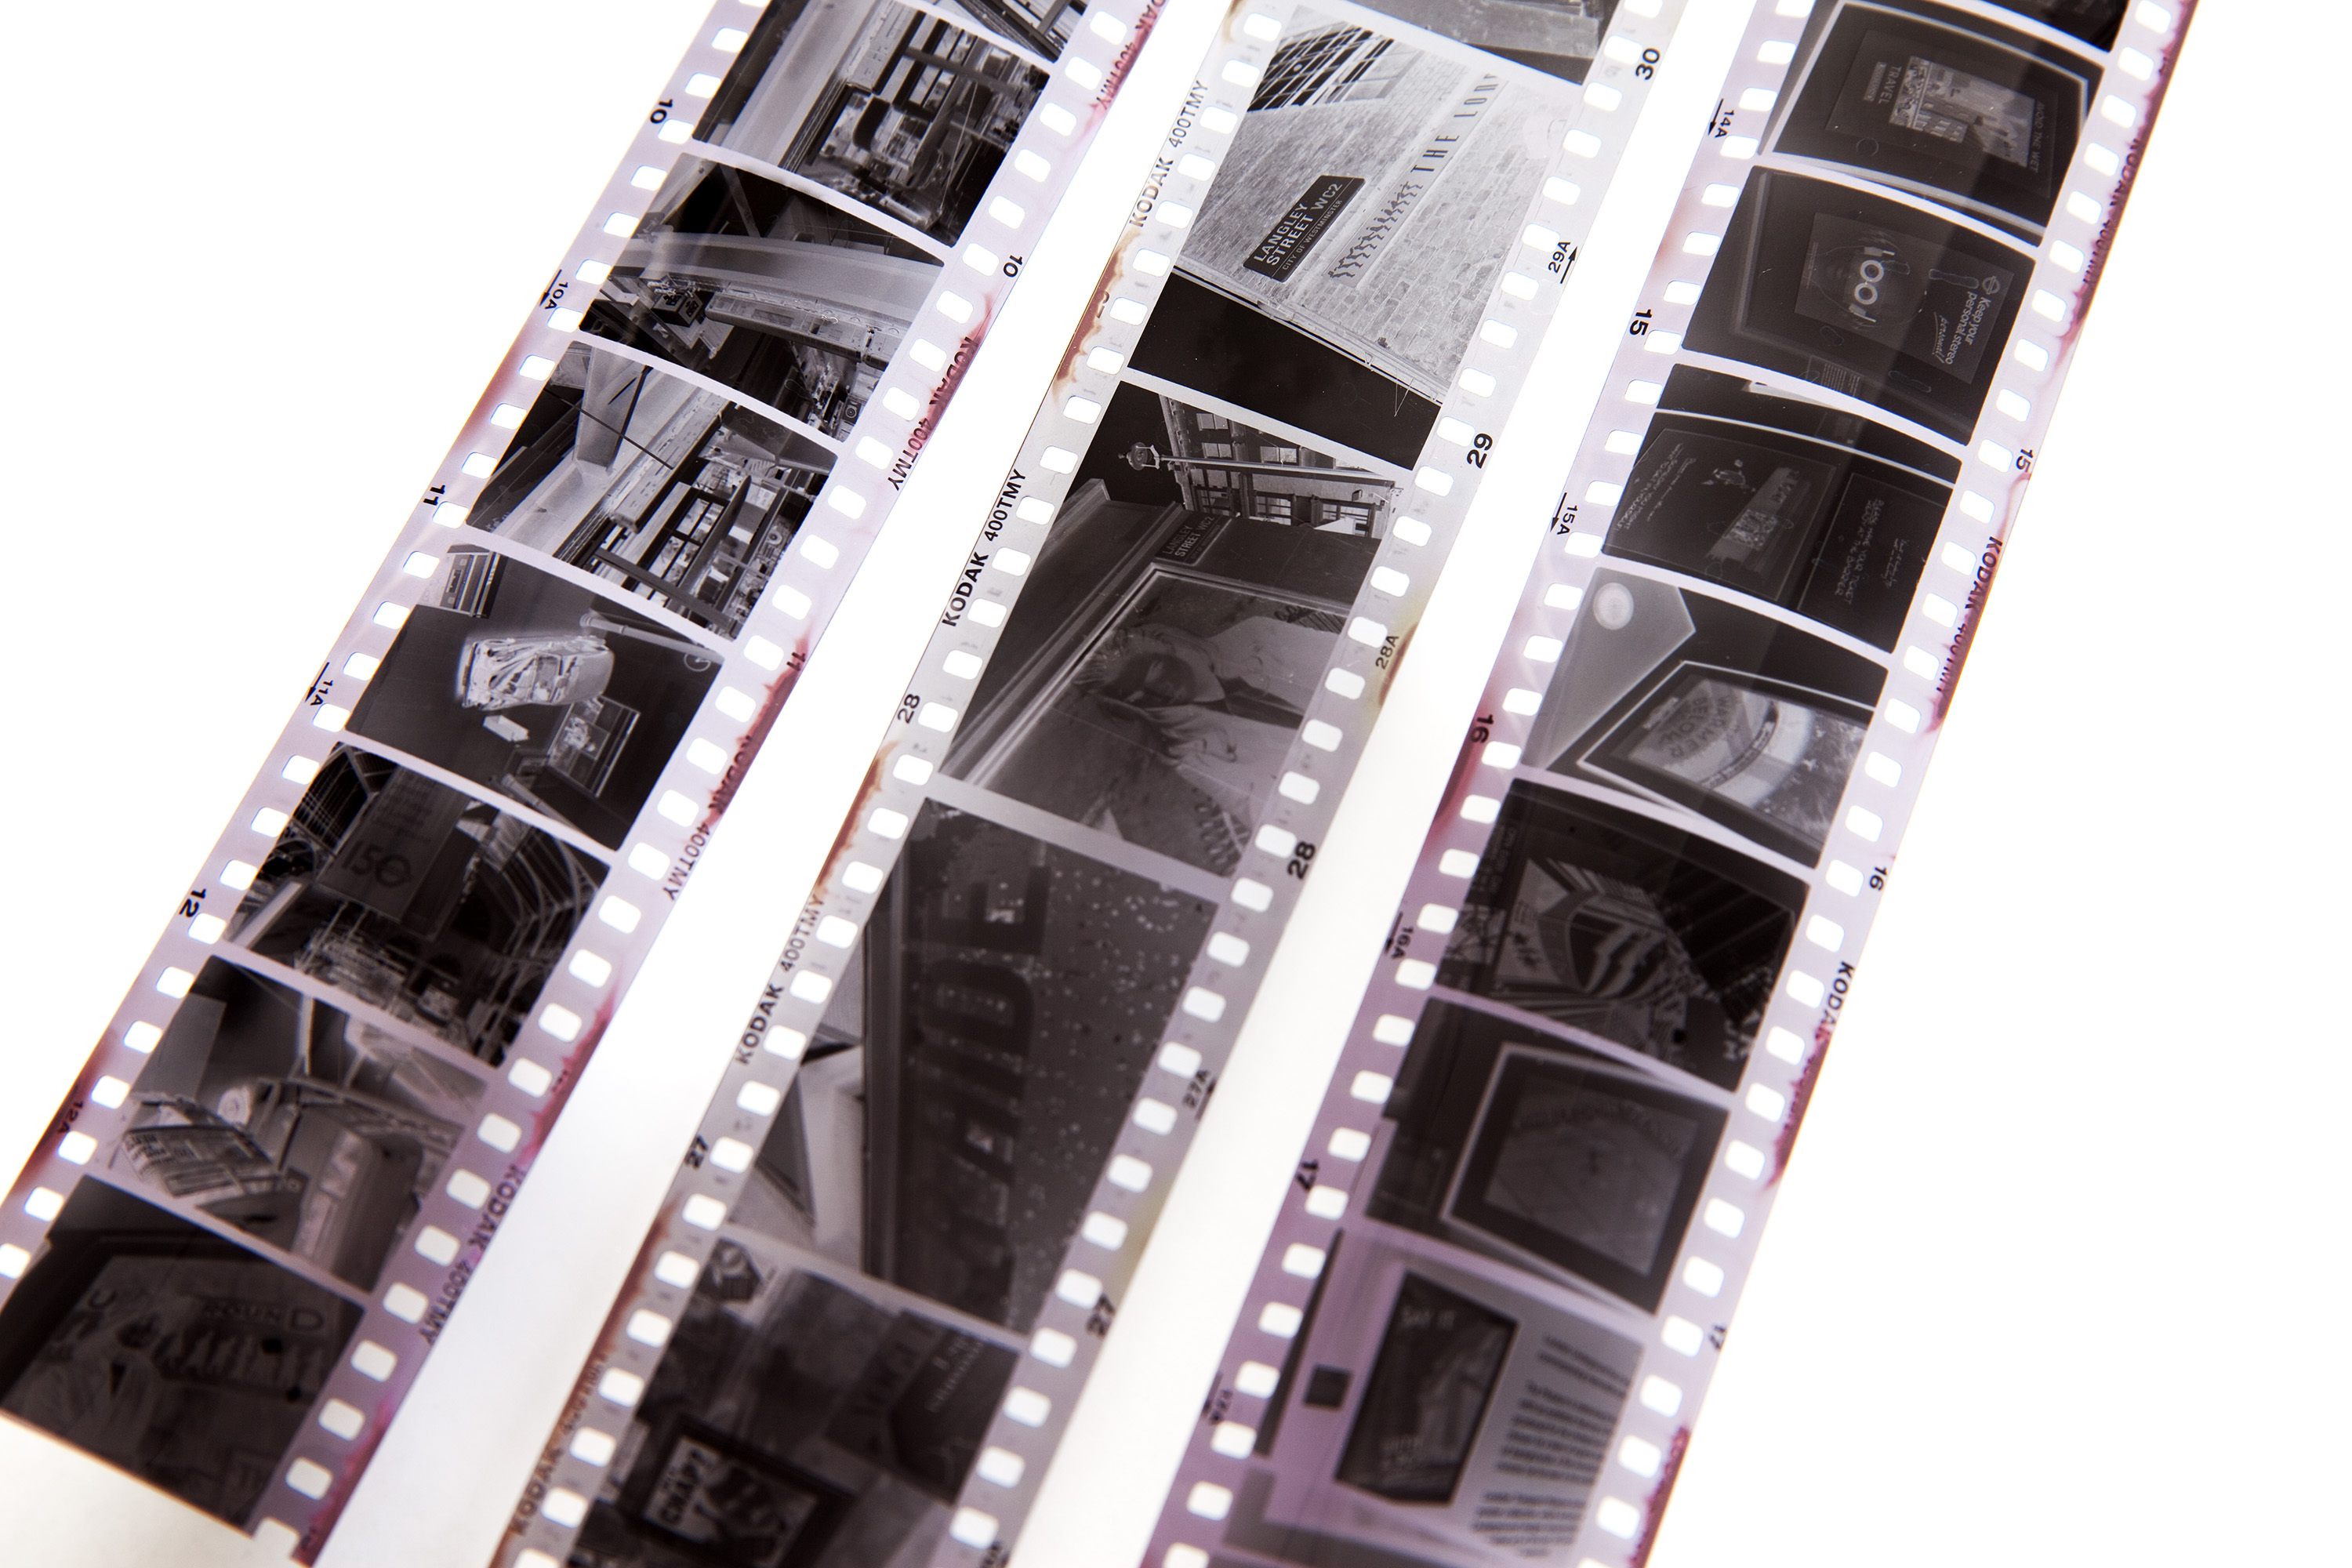 35mm film strips